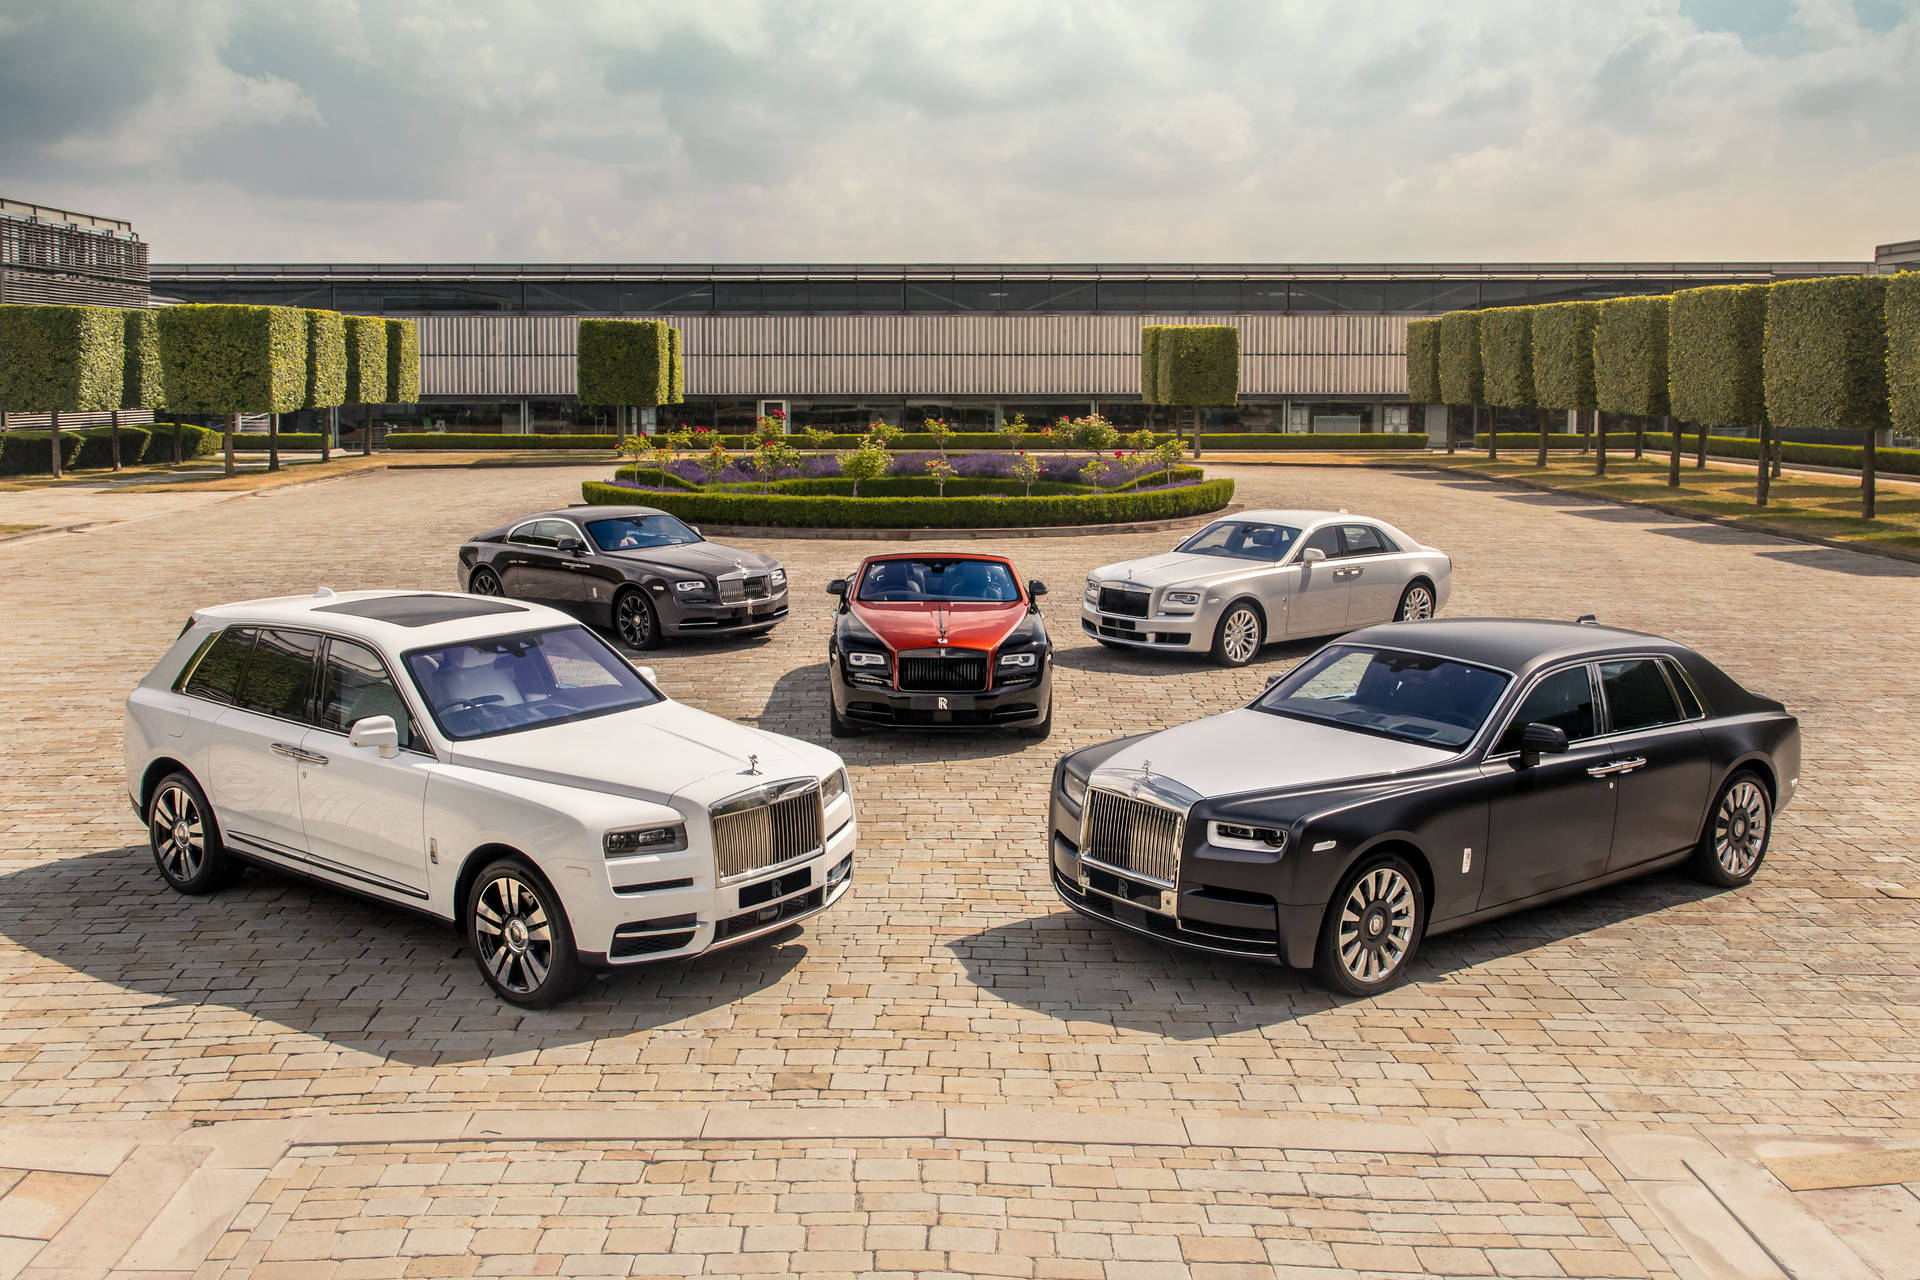 Rolls-Royce 4K Cars Near Fountain Wallpaper